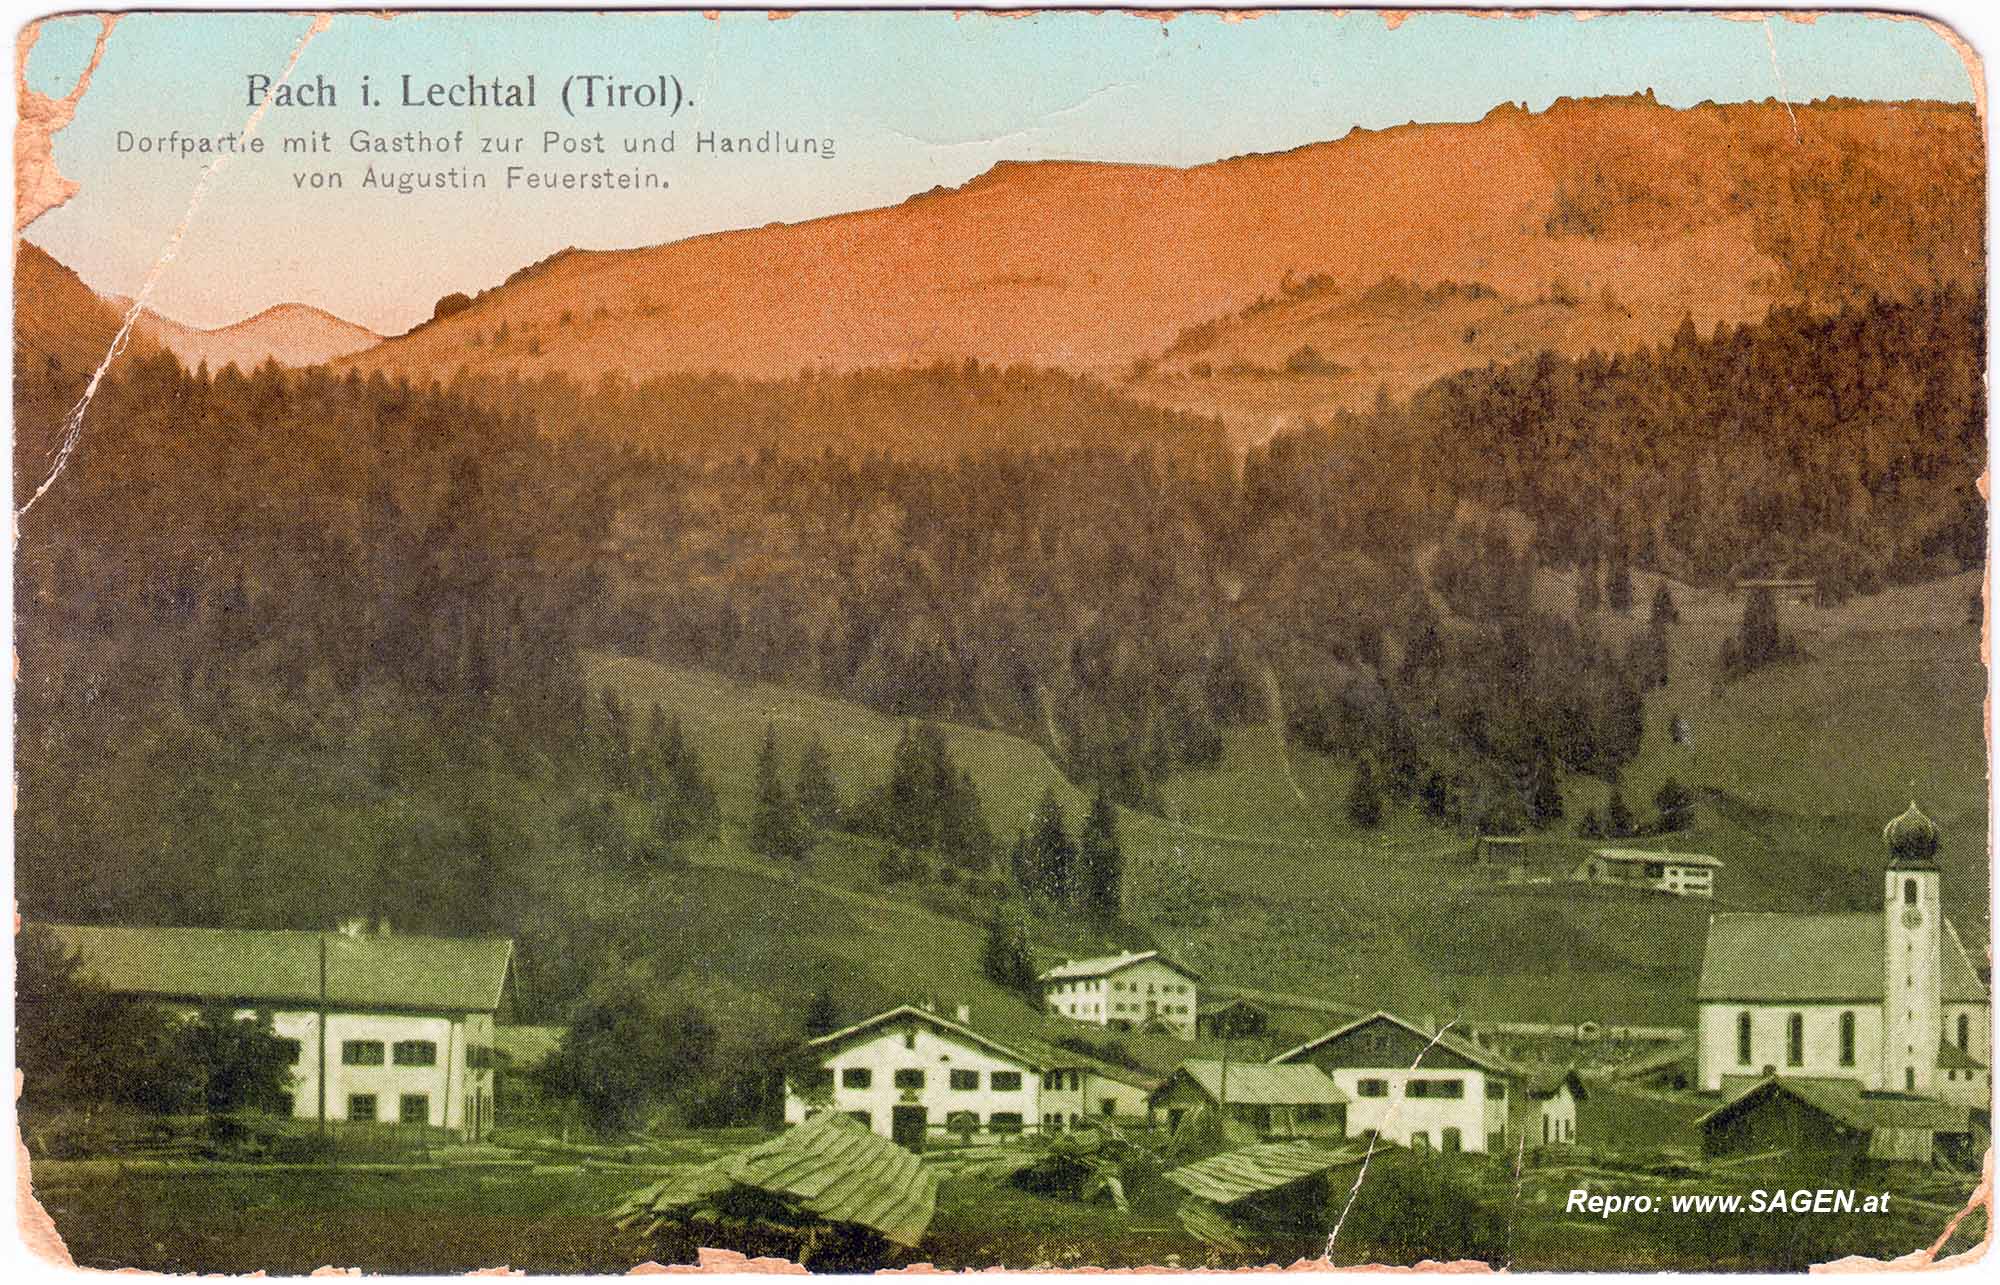 Bach im Lechtal, Tirol